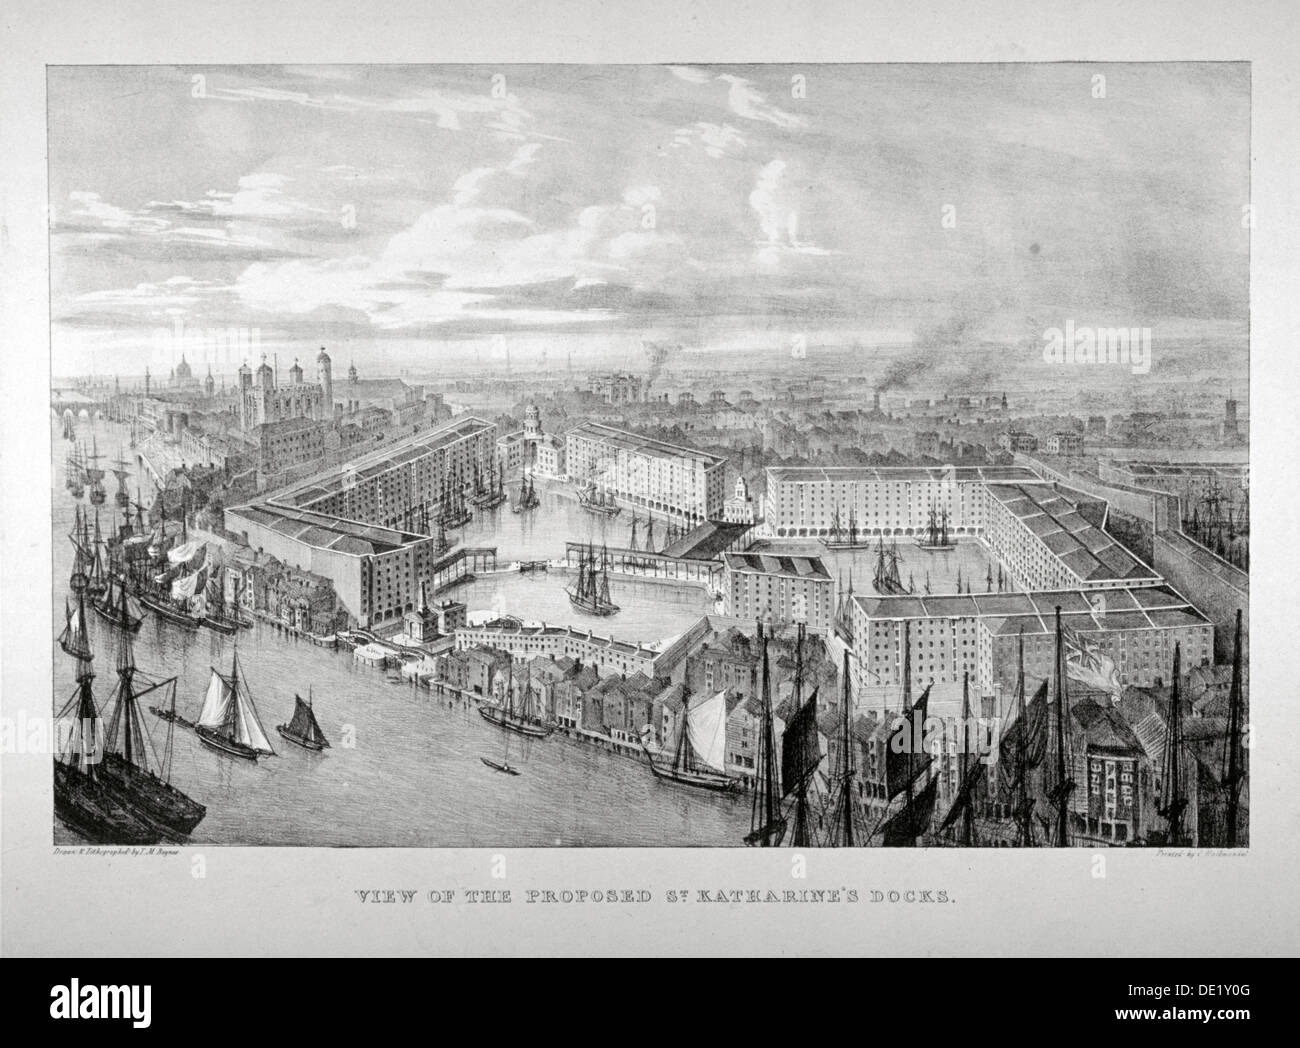 Blick auf die vorgeschlagenen St Katharine Dock, London, c1825.  Künstler: Thomas Mann Baynes Stockfoto